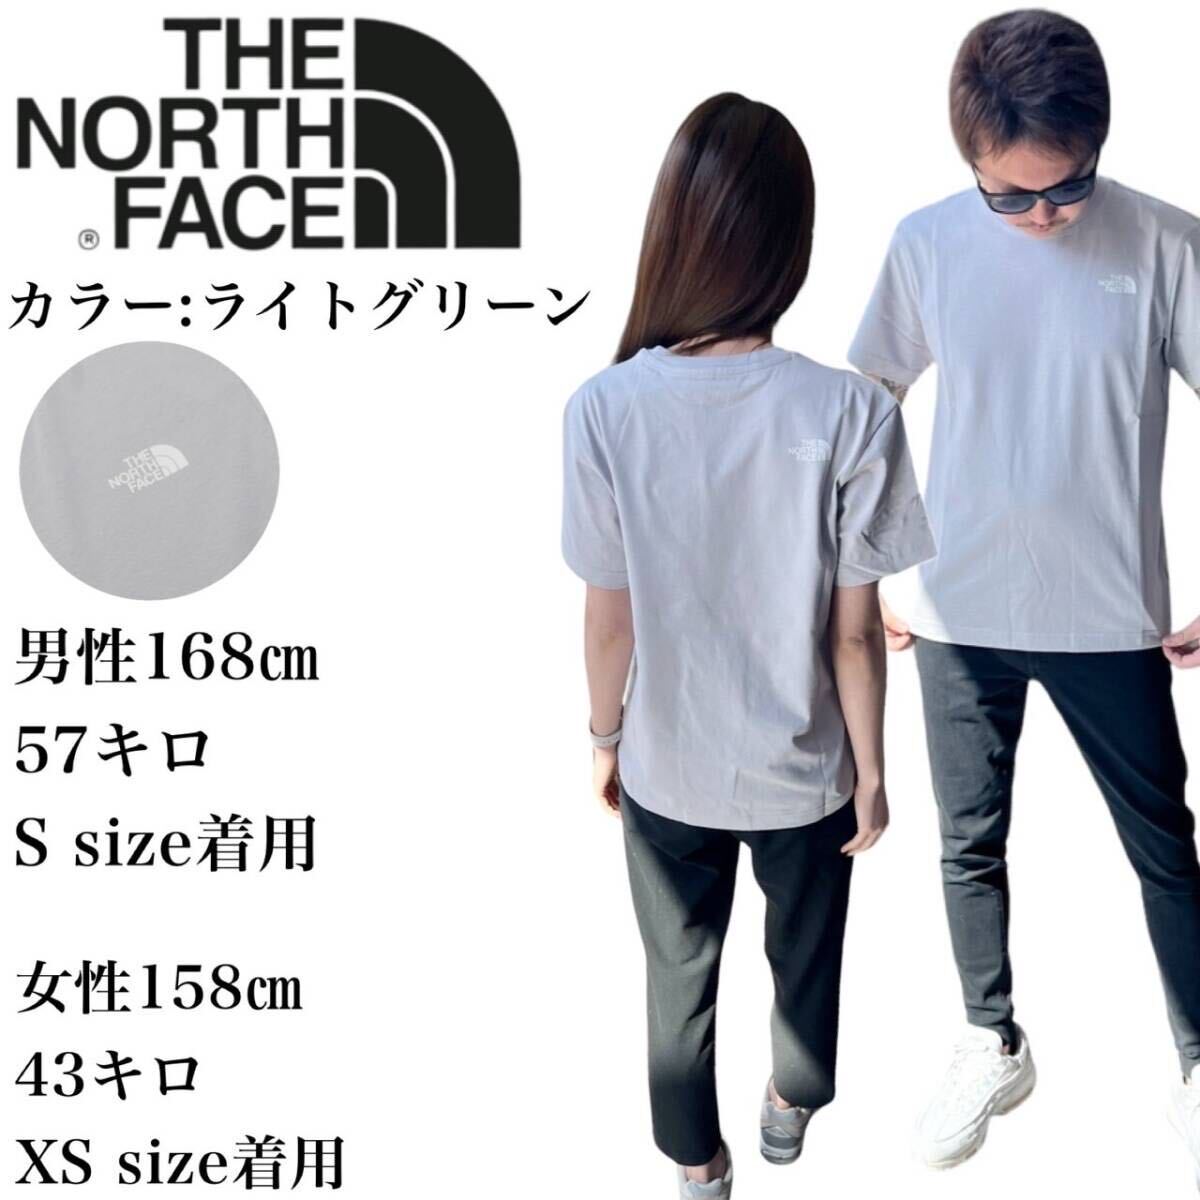 ザ ノースフェイス Tシャツ NT7U ライトグレー XSサイズ コットン素材 クルーネック シンプルロゴ THE NORTH FACE COTTON S/S TEE 新品_画像2